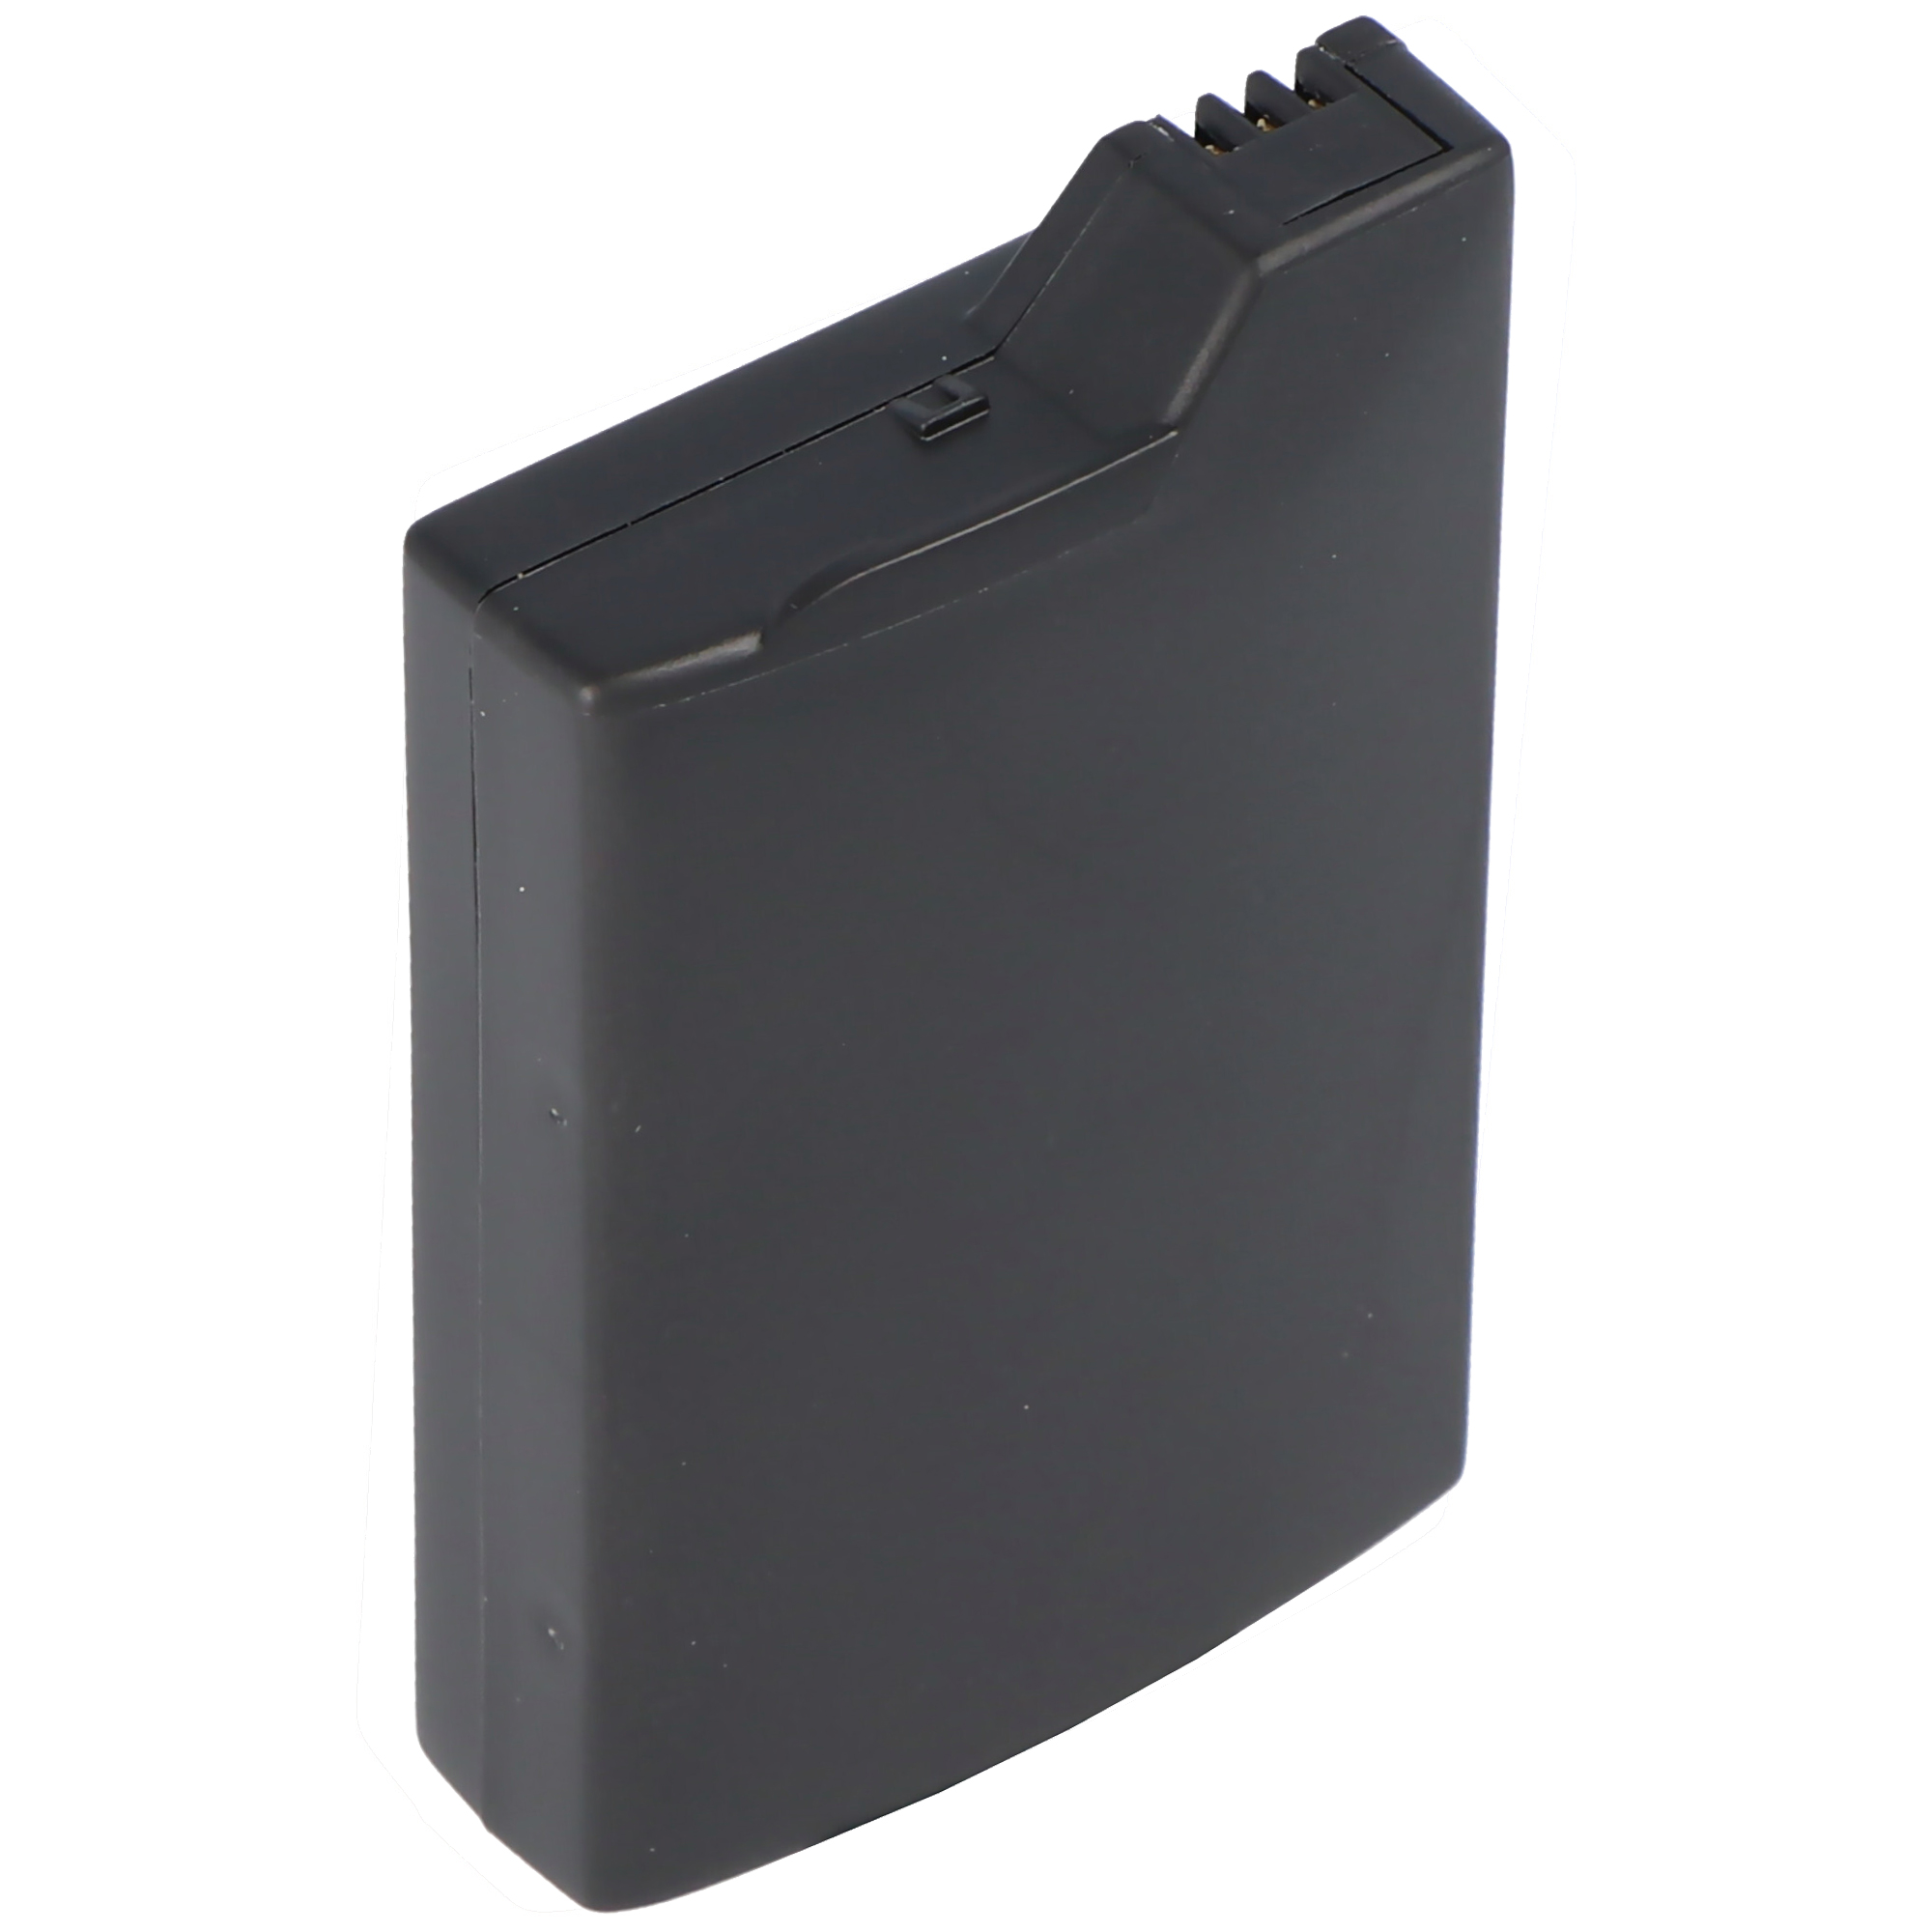 Li-Ion-Akku - 1600mAh (3.6V) - für Spielkonsole wie Sony PSP-110, PSP-280G